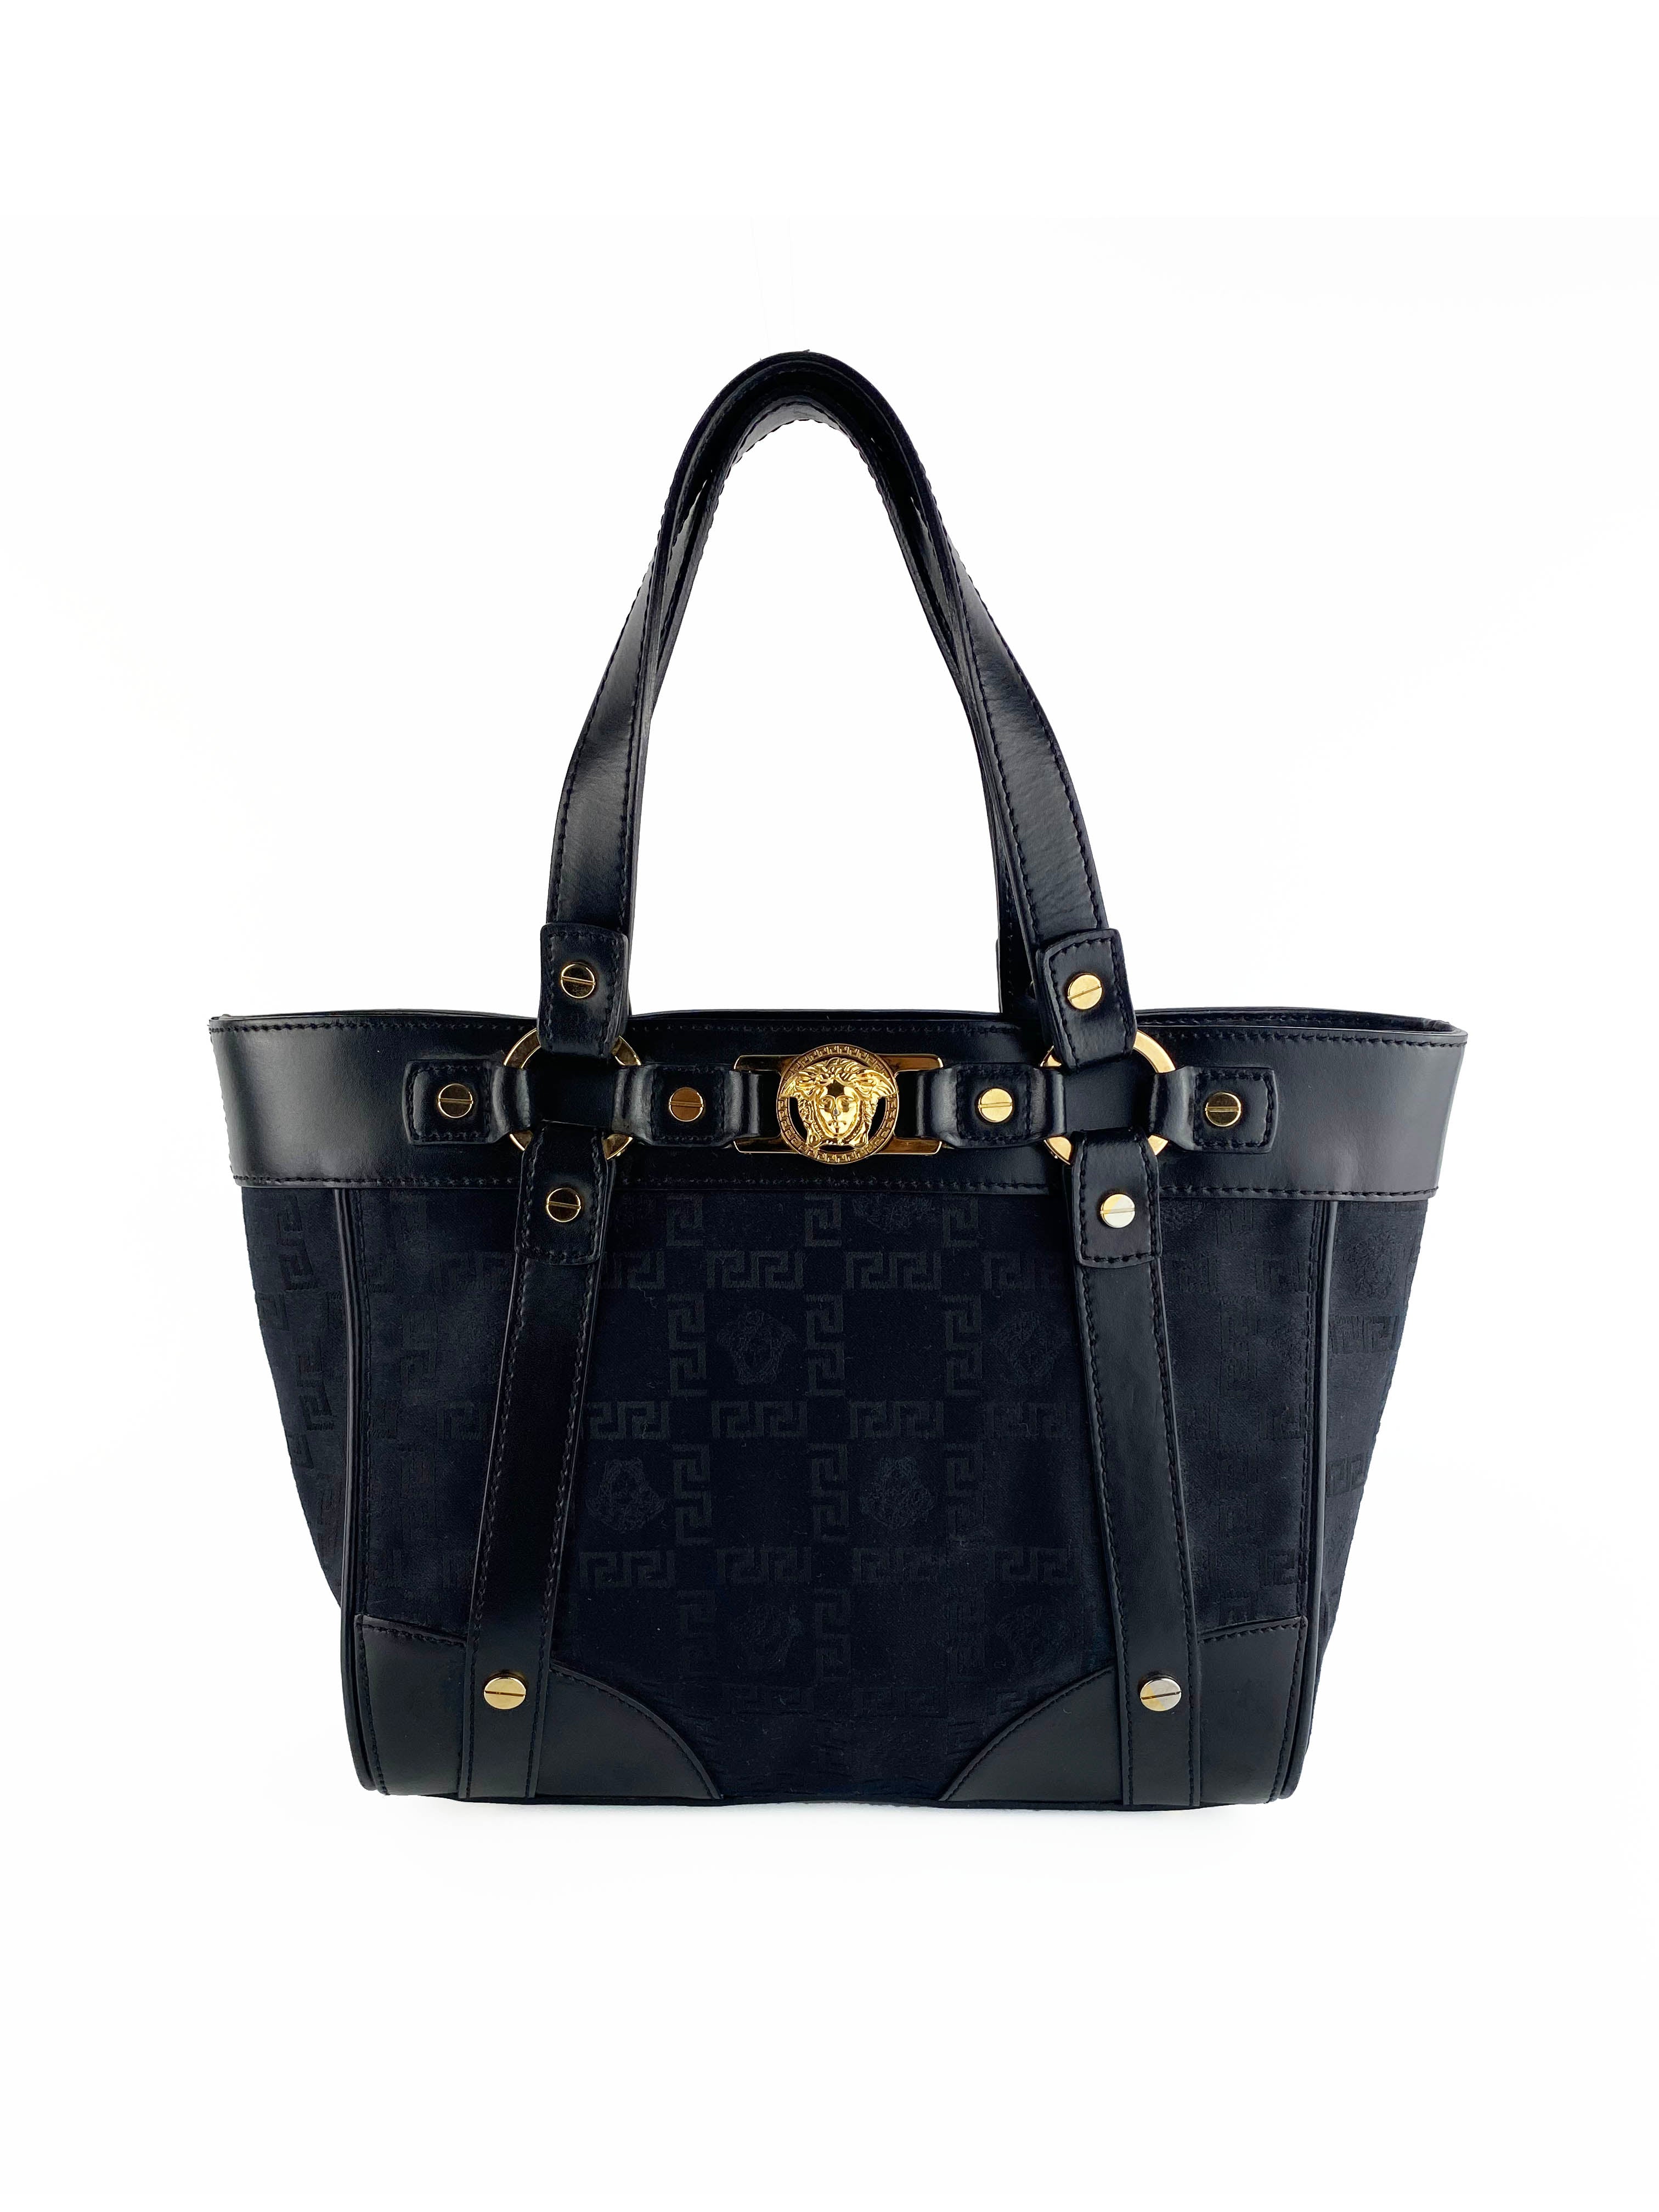 versace-black-vintage-shoulder-bag-1.jpg